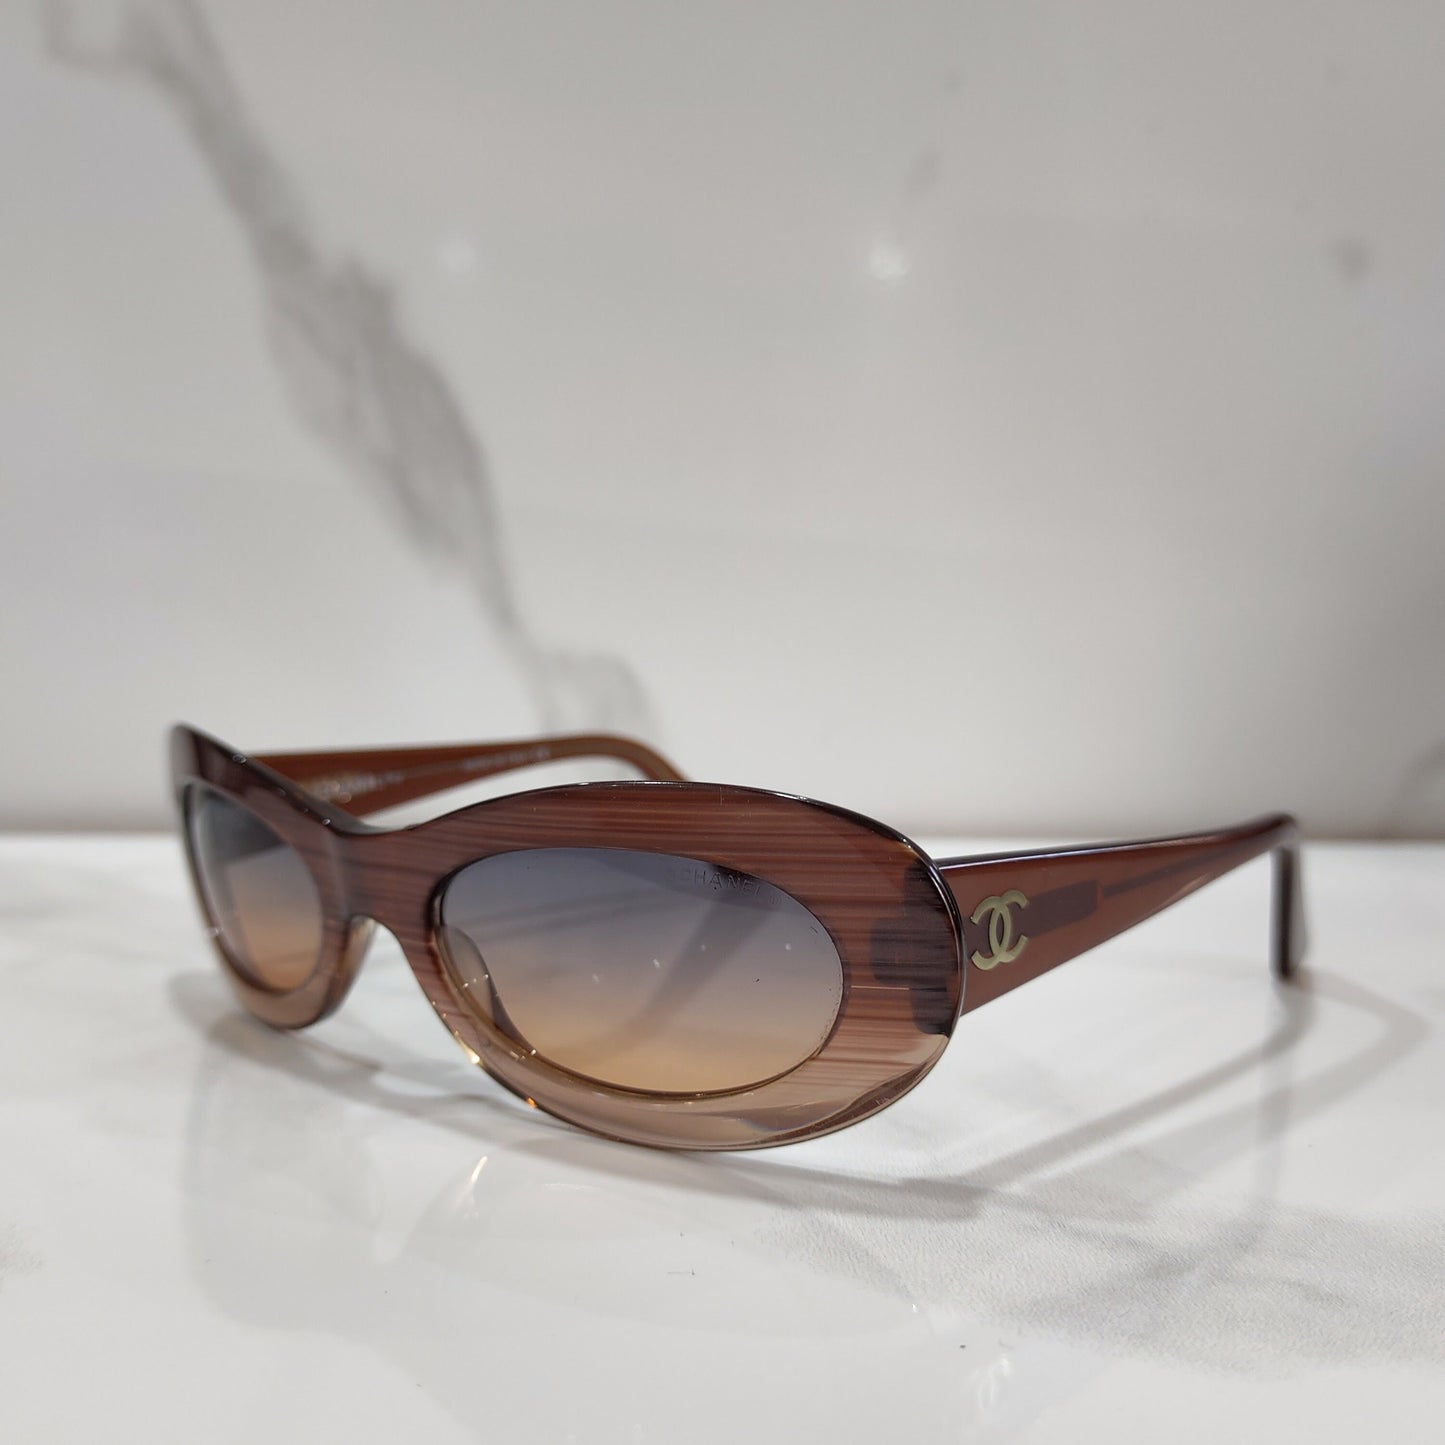 Chanel 型号 5007 标志性 brille 边框太阳镜 90 年代色调